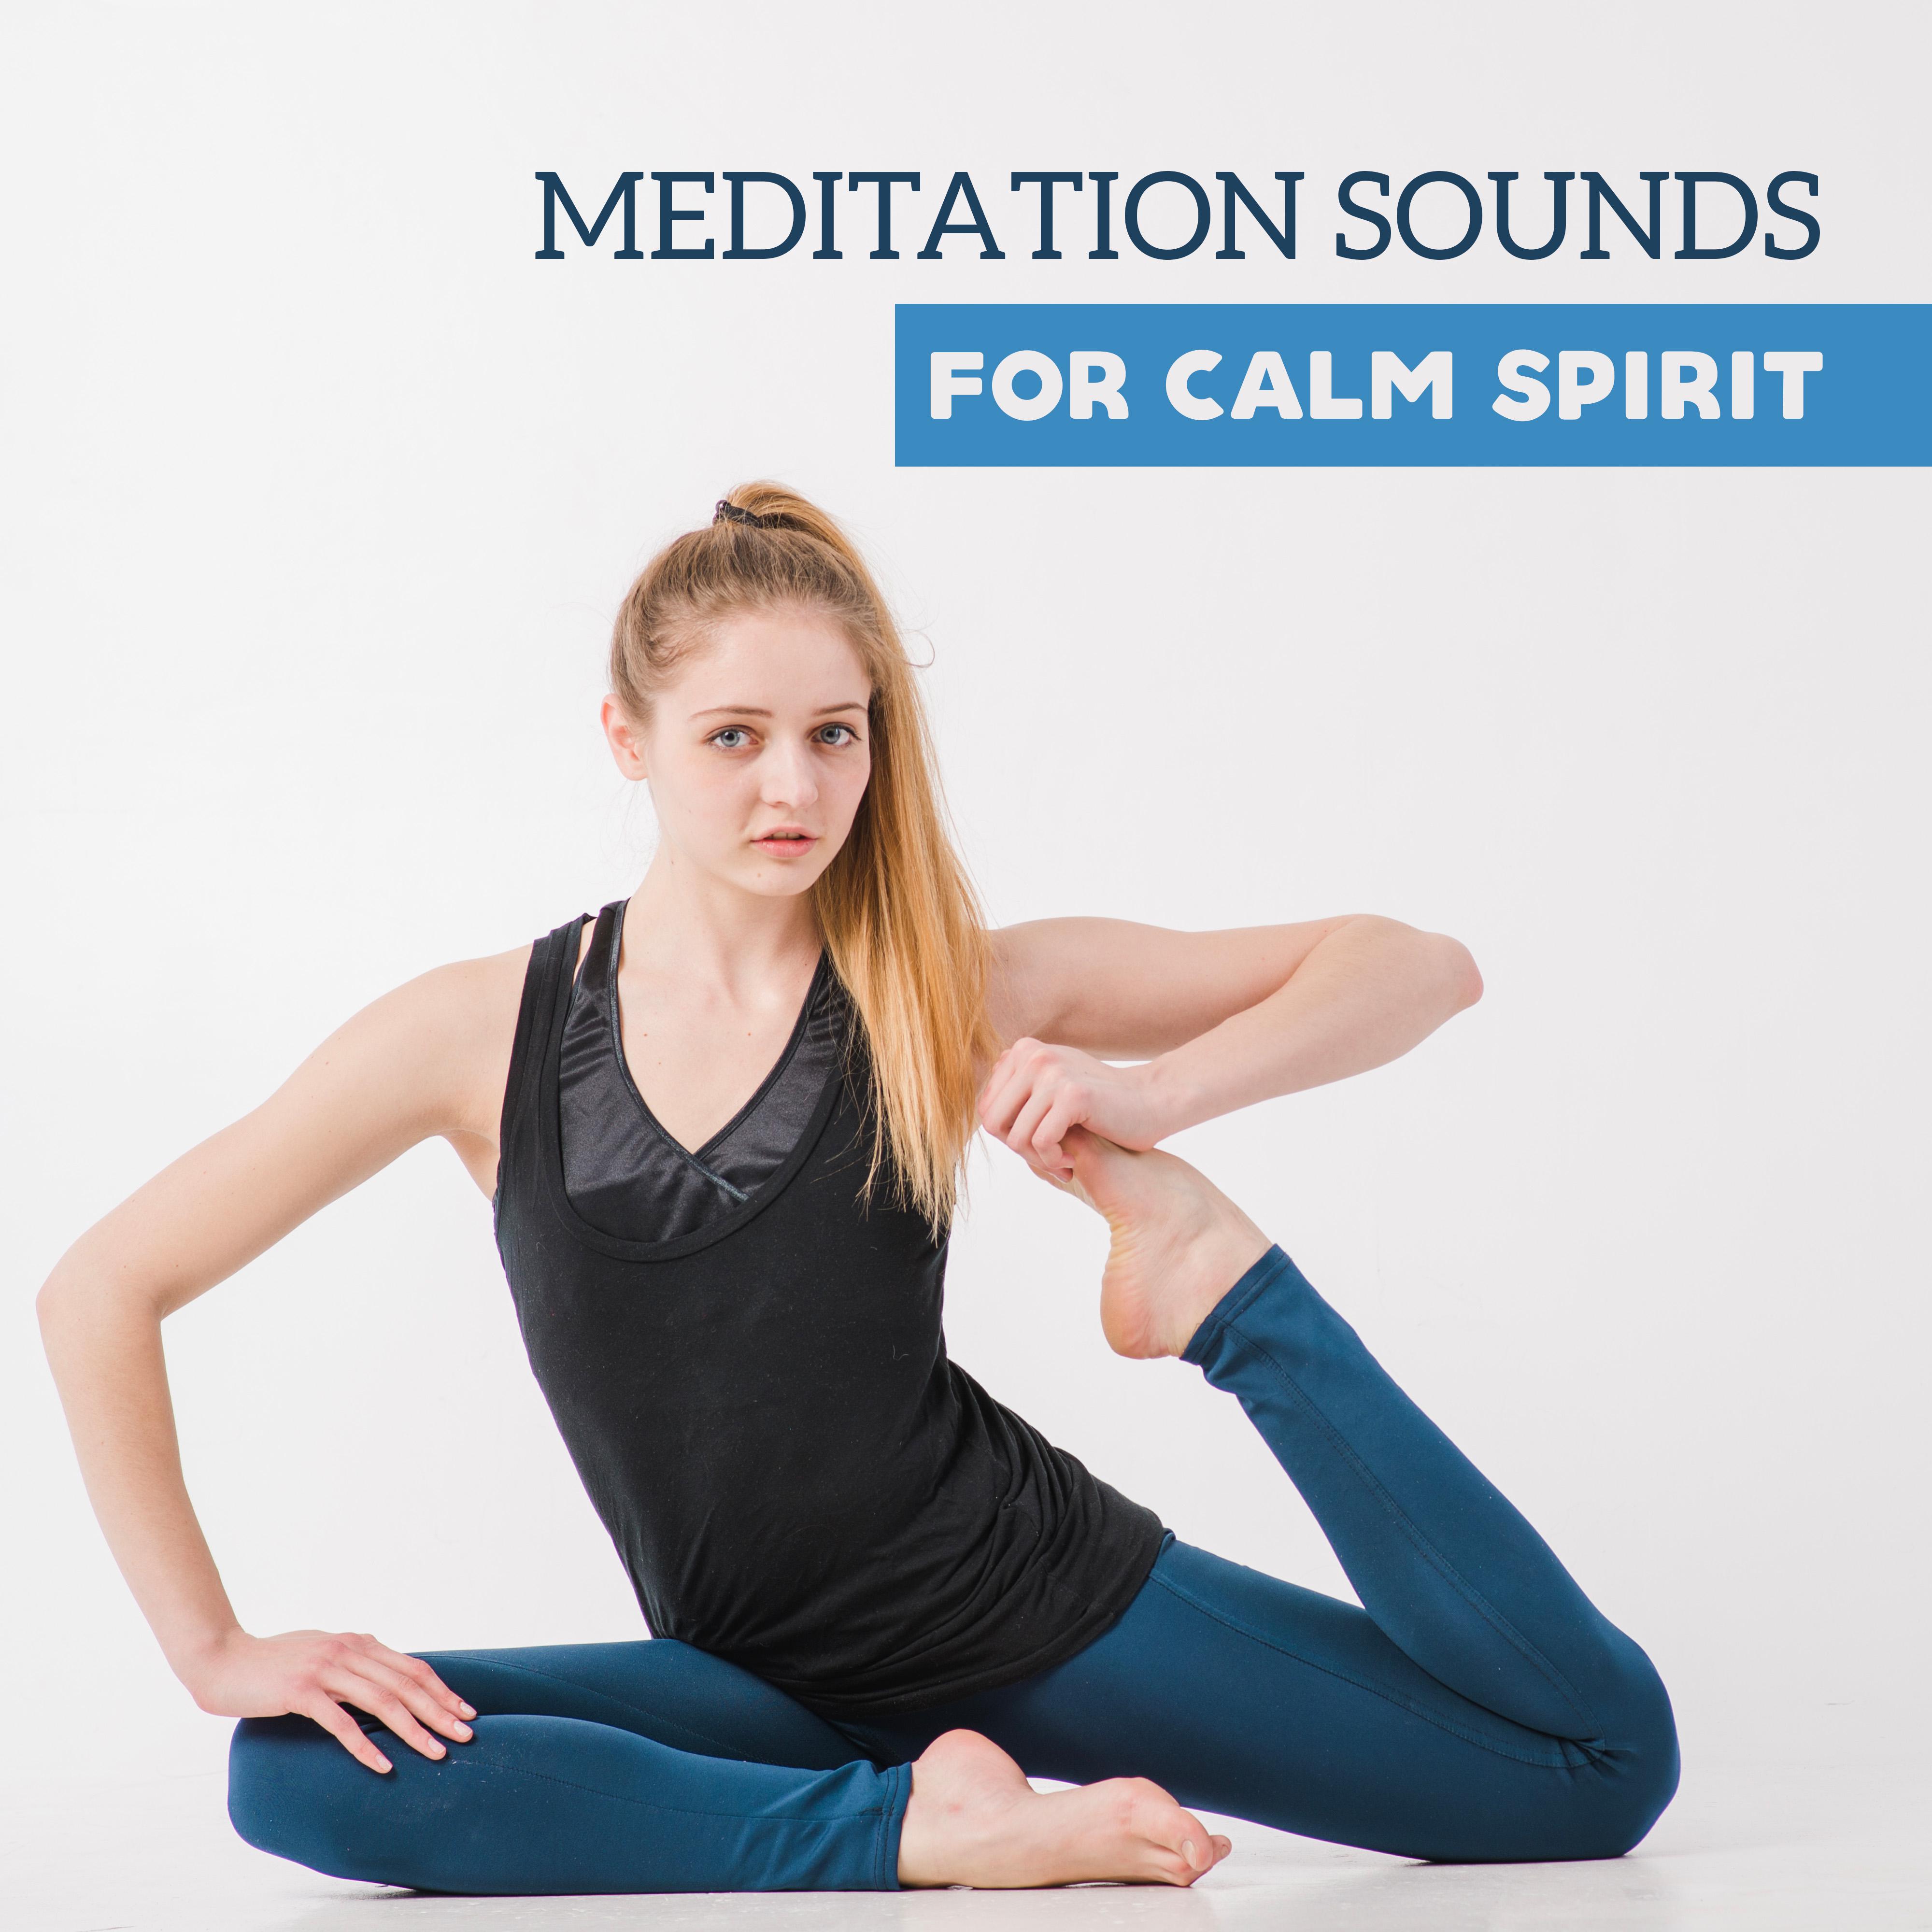 Meditation Sounds for Calm Spirit